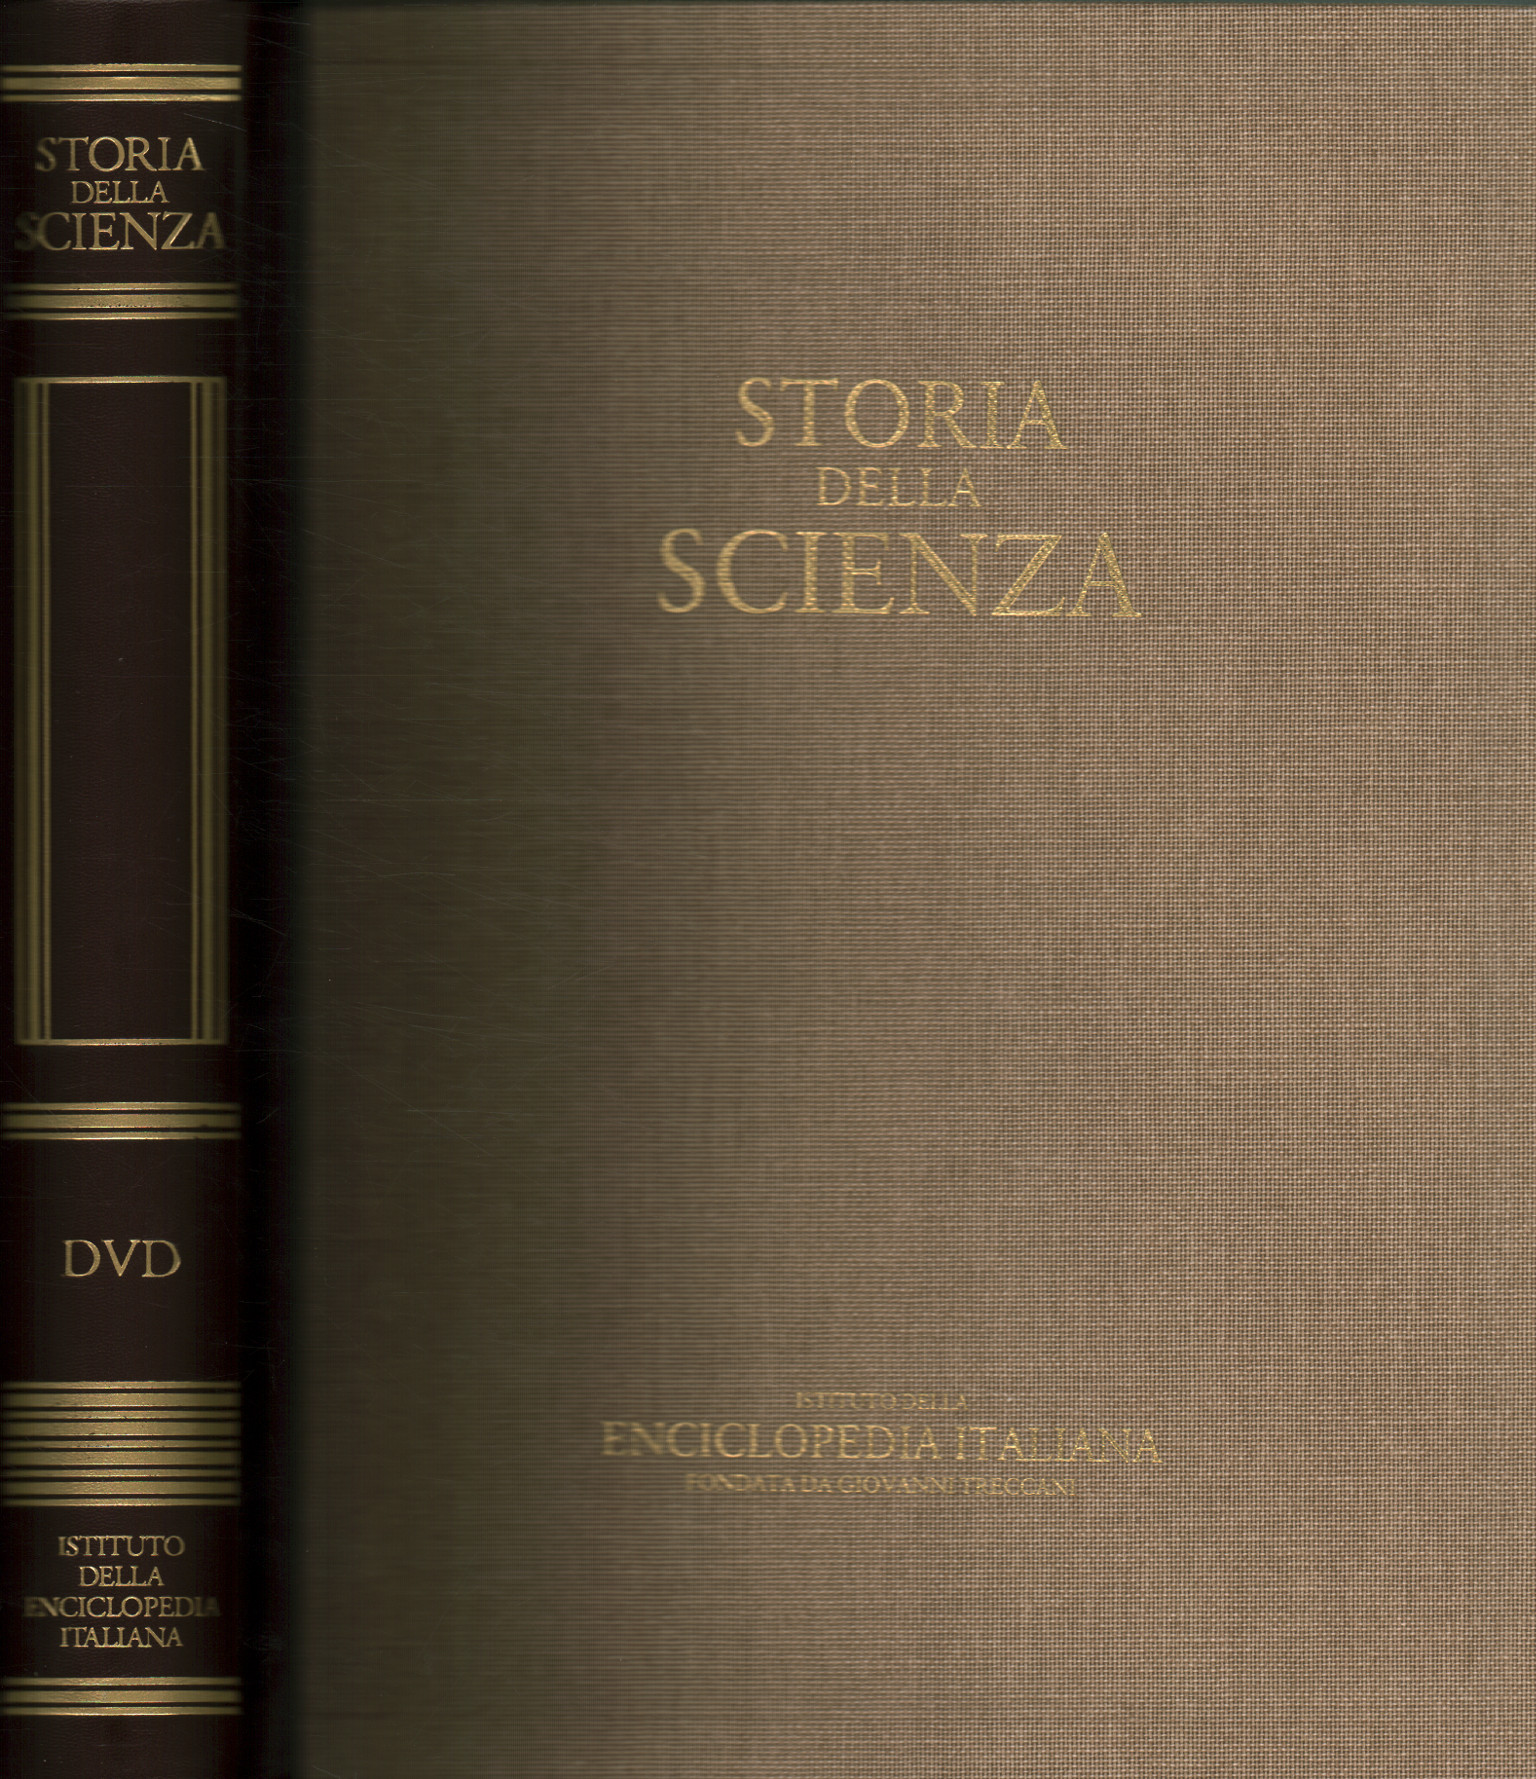 History of Science DVD, History of Science. DVD